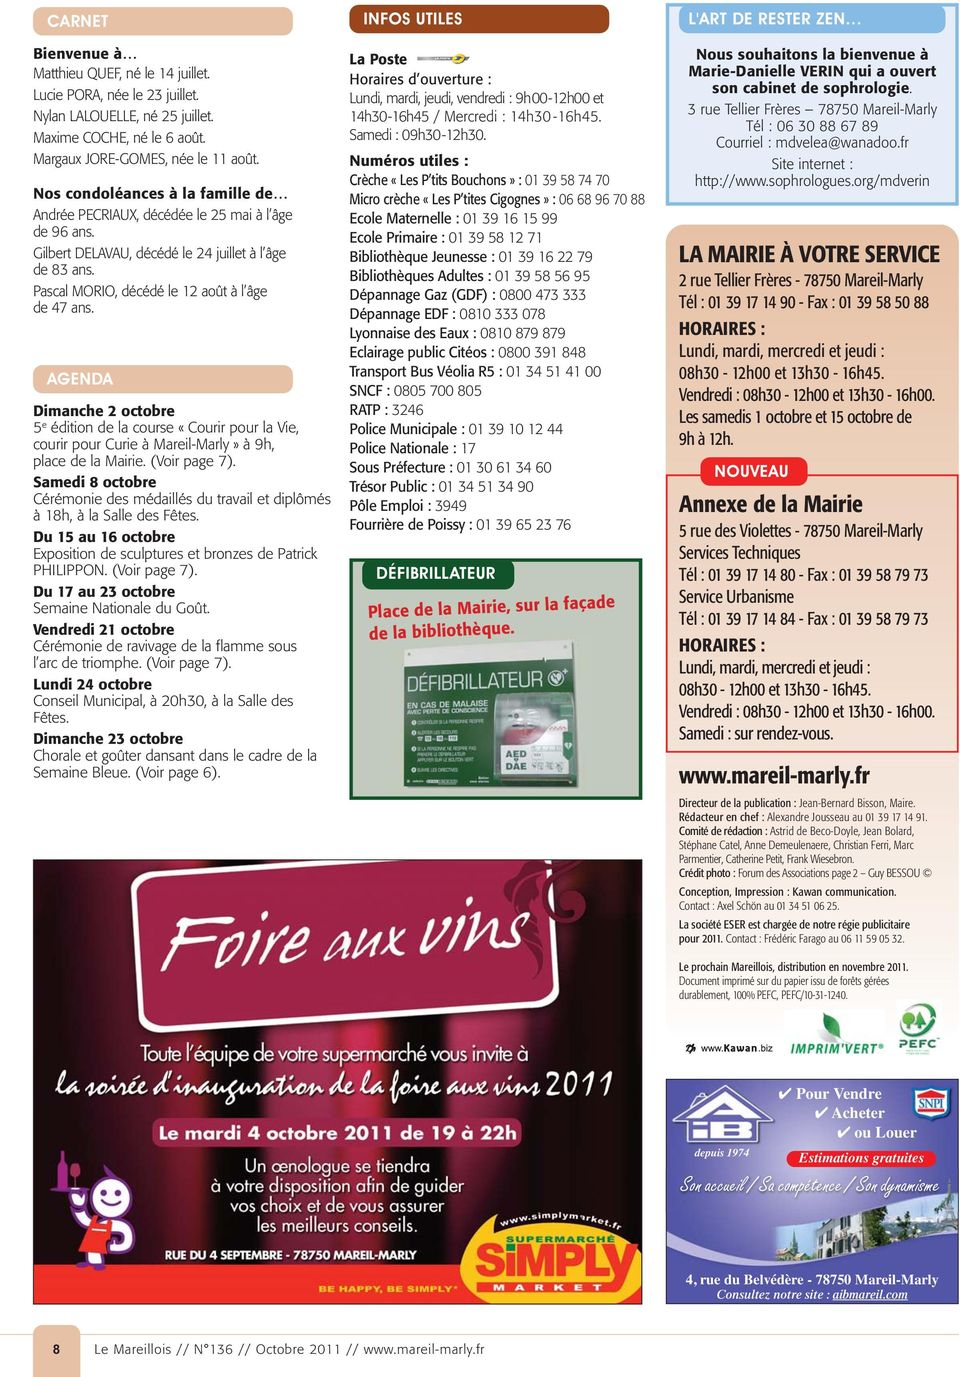 AGENDA Dimanche 2 octobre 5 e édition de la course «Courir pour la Vie, courir pour Curie à Mareil-Marly» à 9h, place de la Mairie. (Voir page 7).